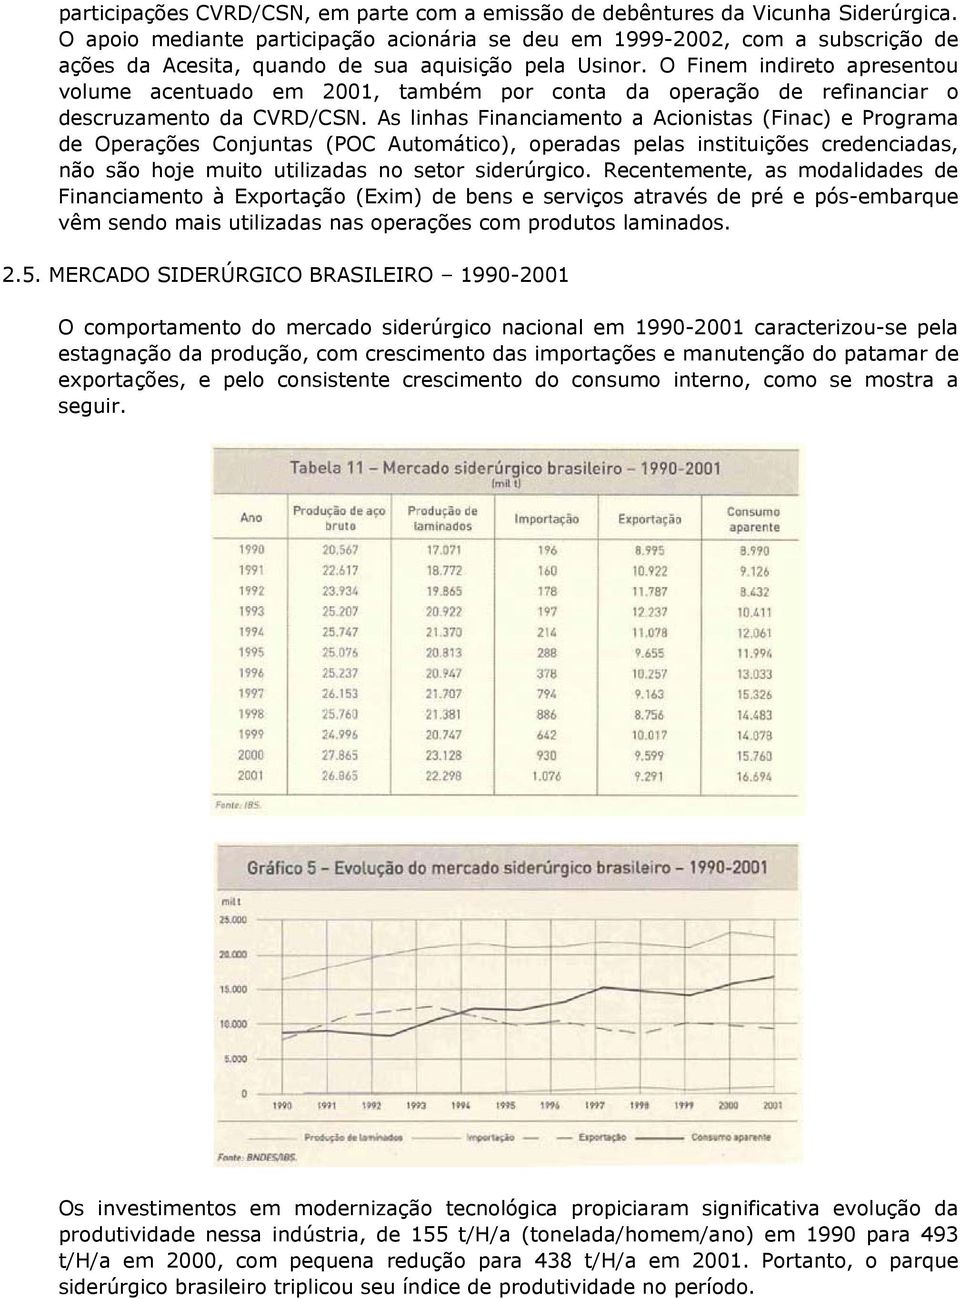 O Finem indireto apresentou volume acentuado em 2001, também por conta da operação de refinanciar o descruzamento da CVRD/CSN.